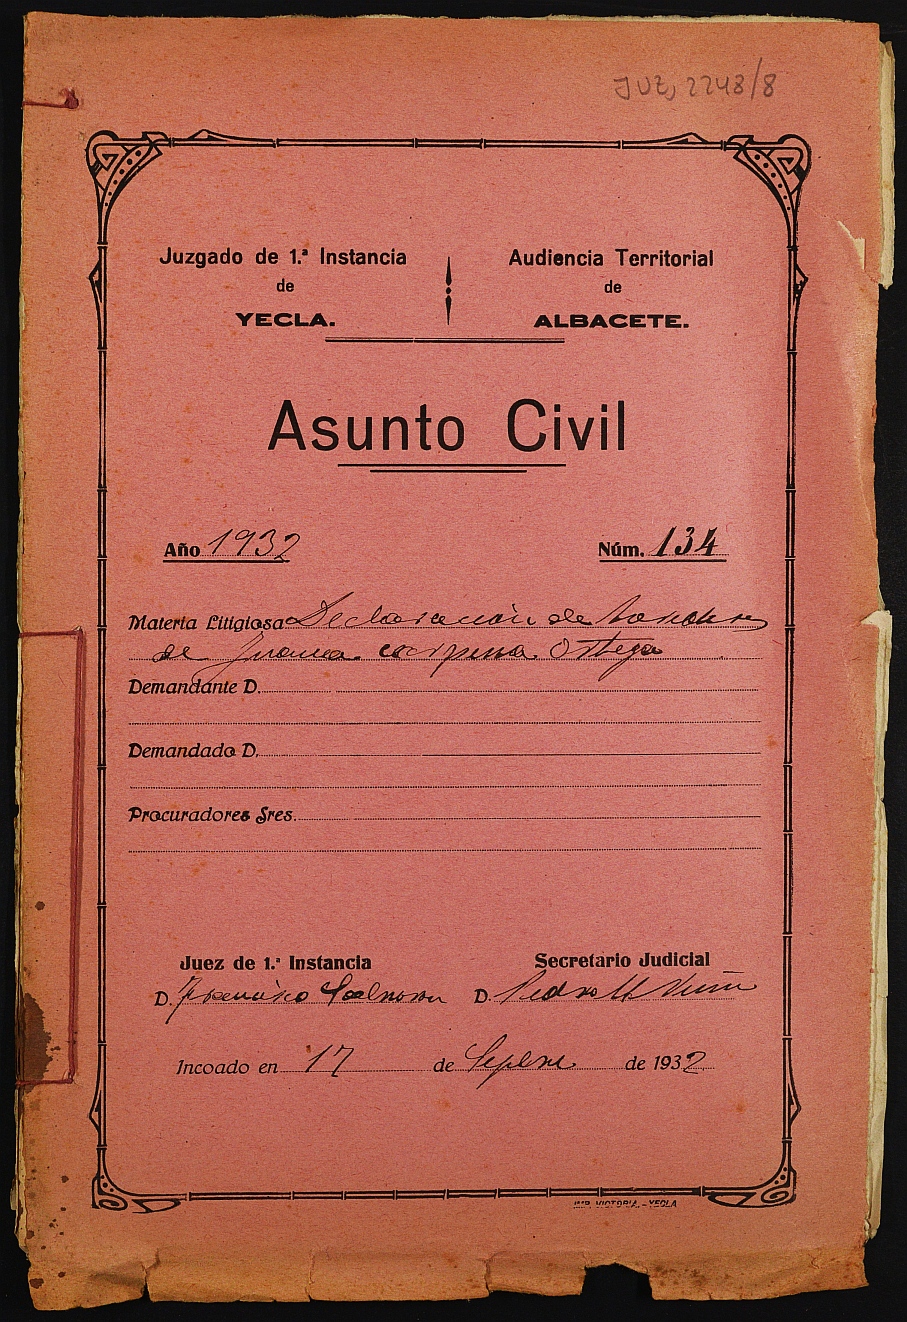 Declaración de herederos 134/1932 del Juzgado de Primera Instancia e Instrucción Nº 1 de Yecla, por defunción de Juana Carpena Ortega.